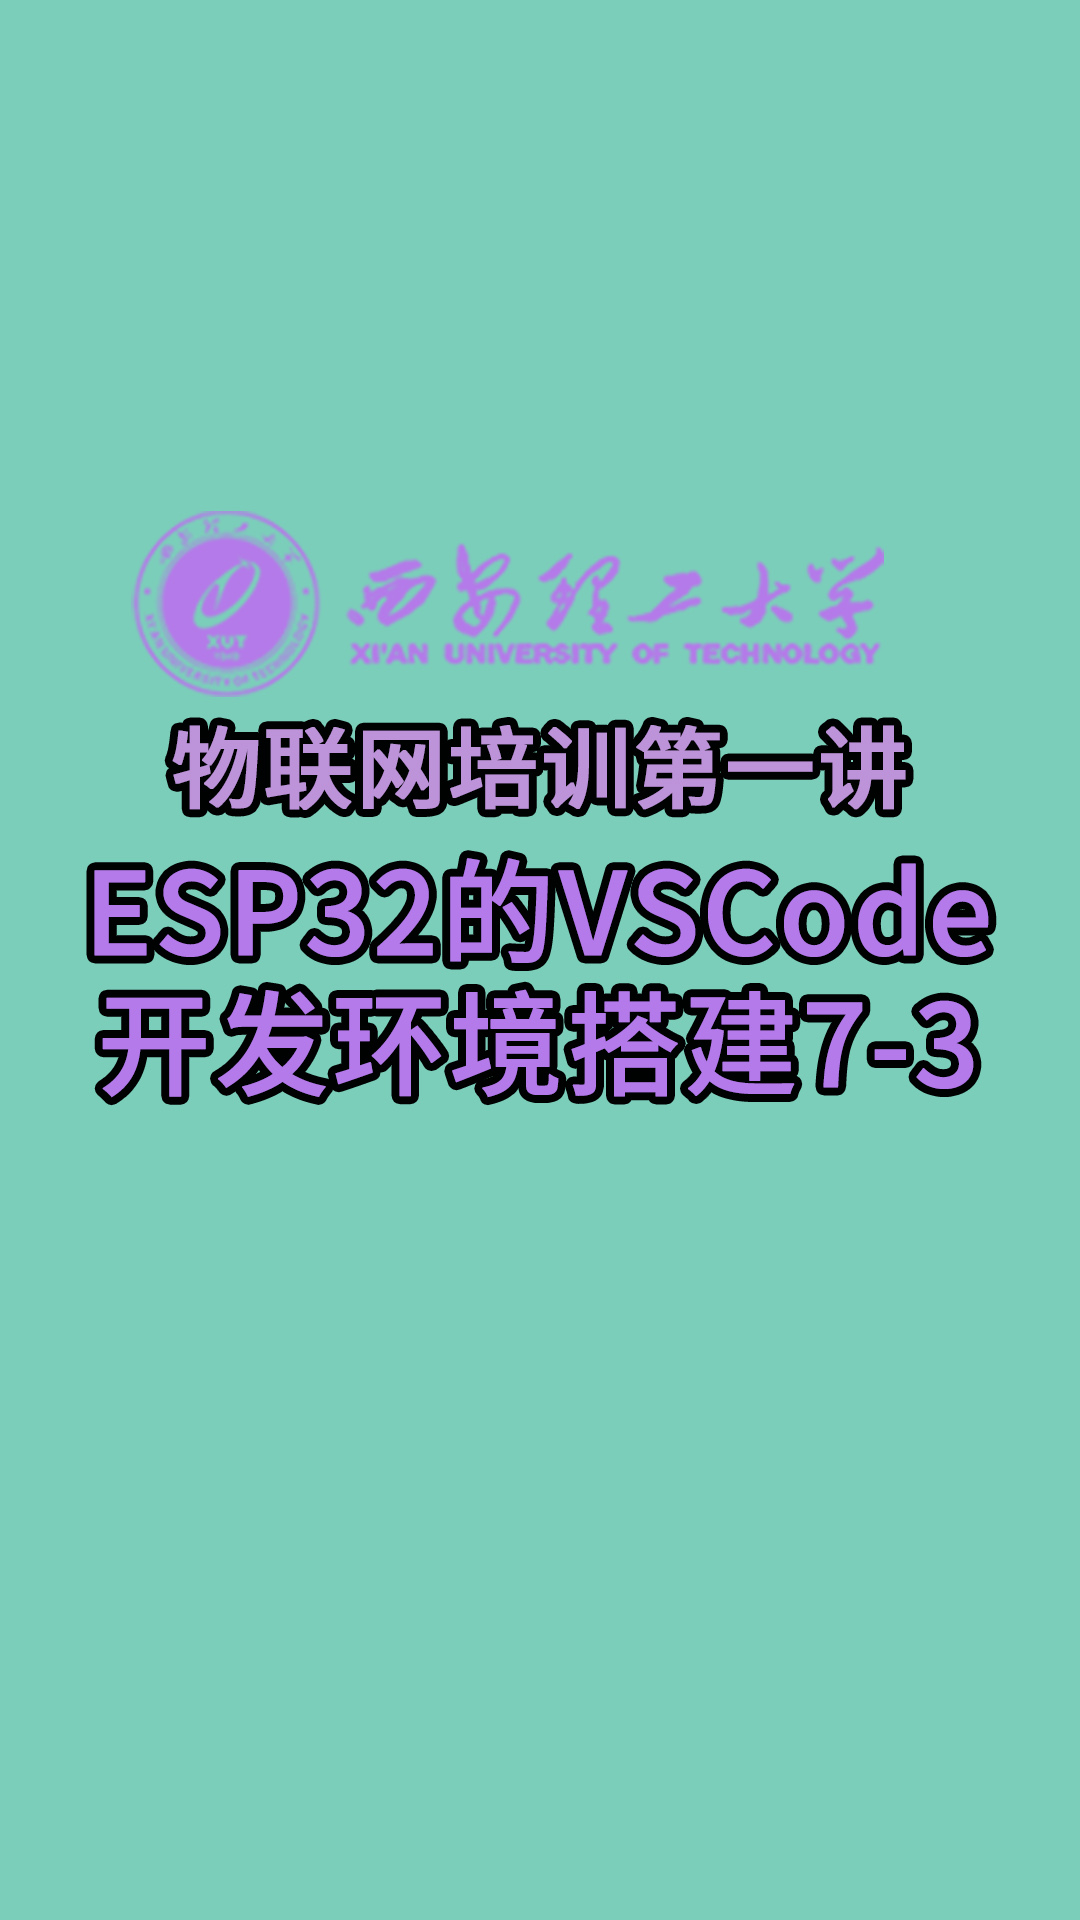 西安理工大学-物联网培训第一讲-ESP32的VSCode开发环境搭建7-3#物联网 